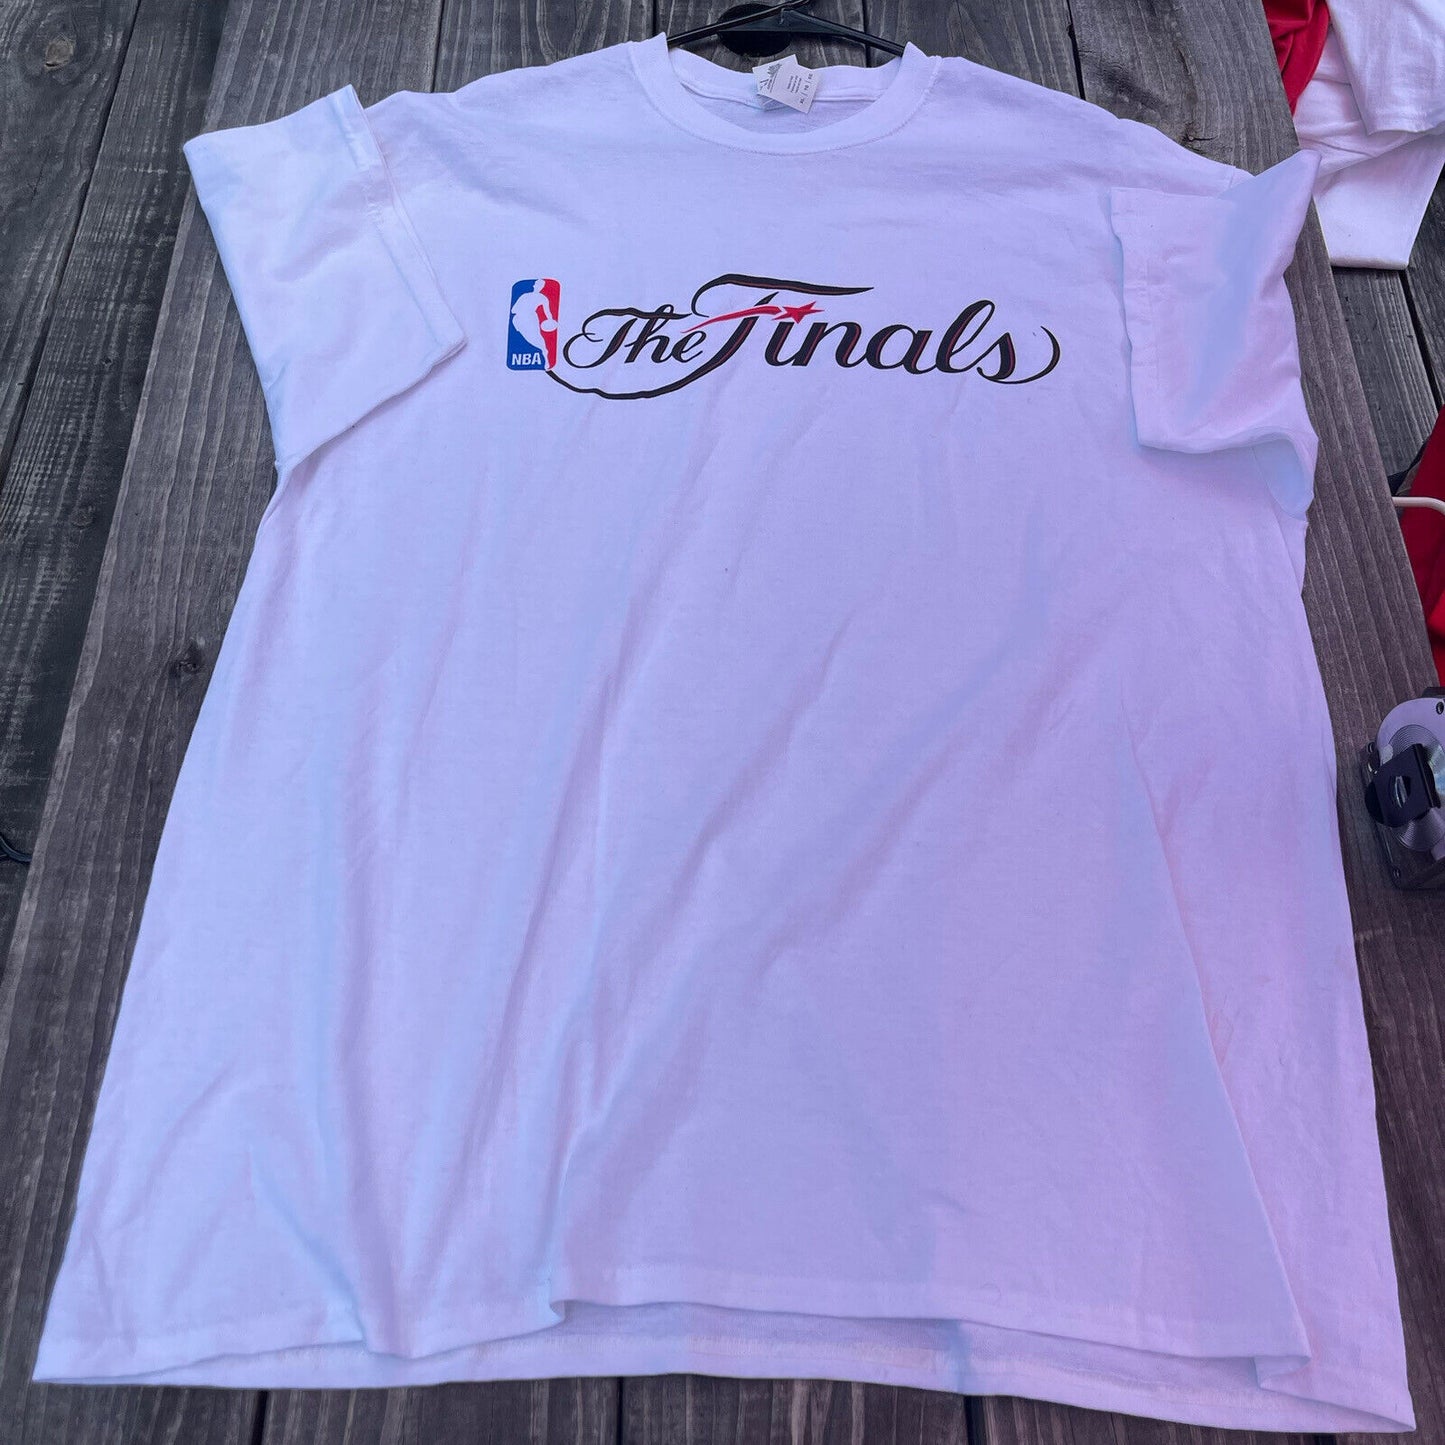 Nba The Finals T Shirt Size Xl